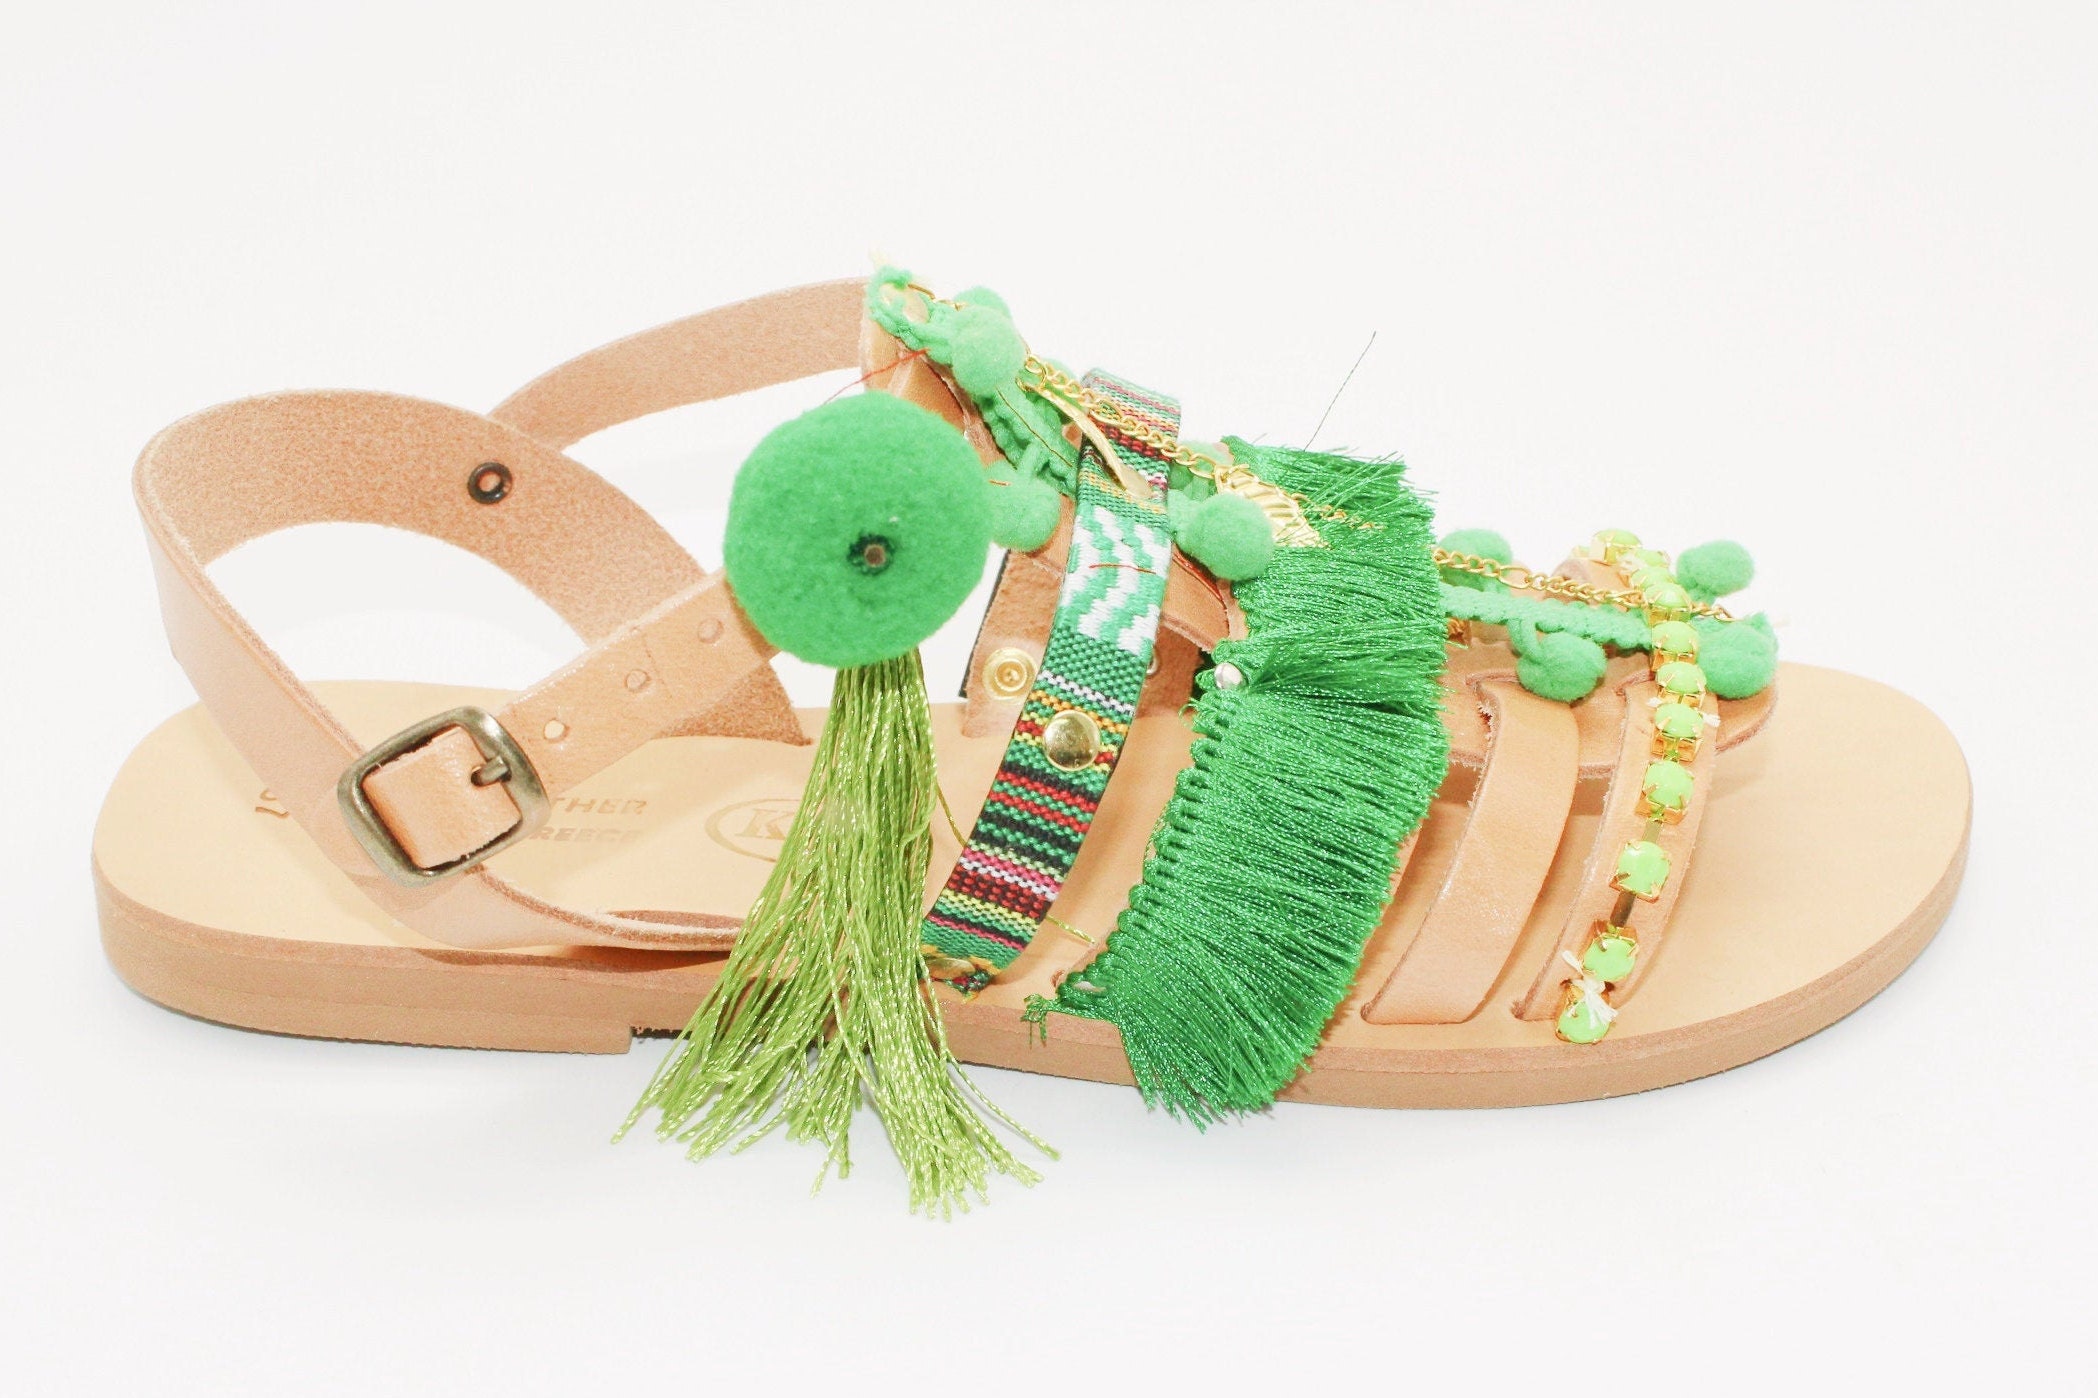 Pompom Gladiator Sandals summer sandals handmade sandals | Etsy